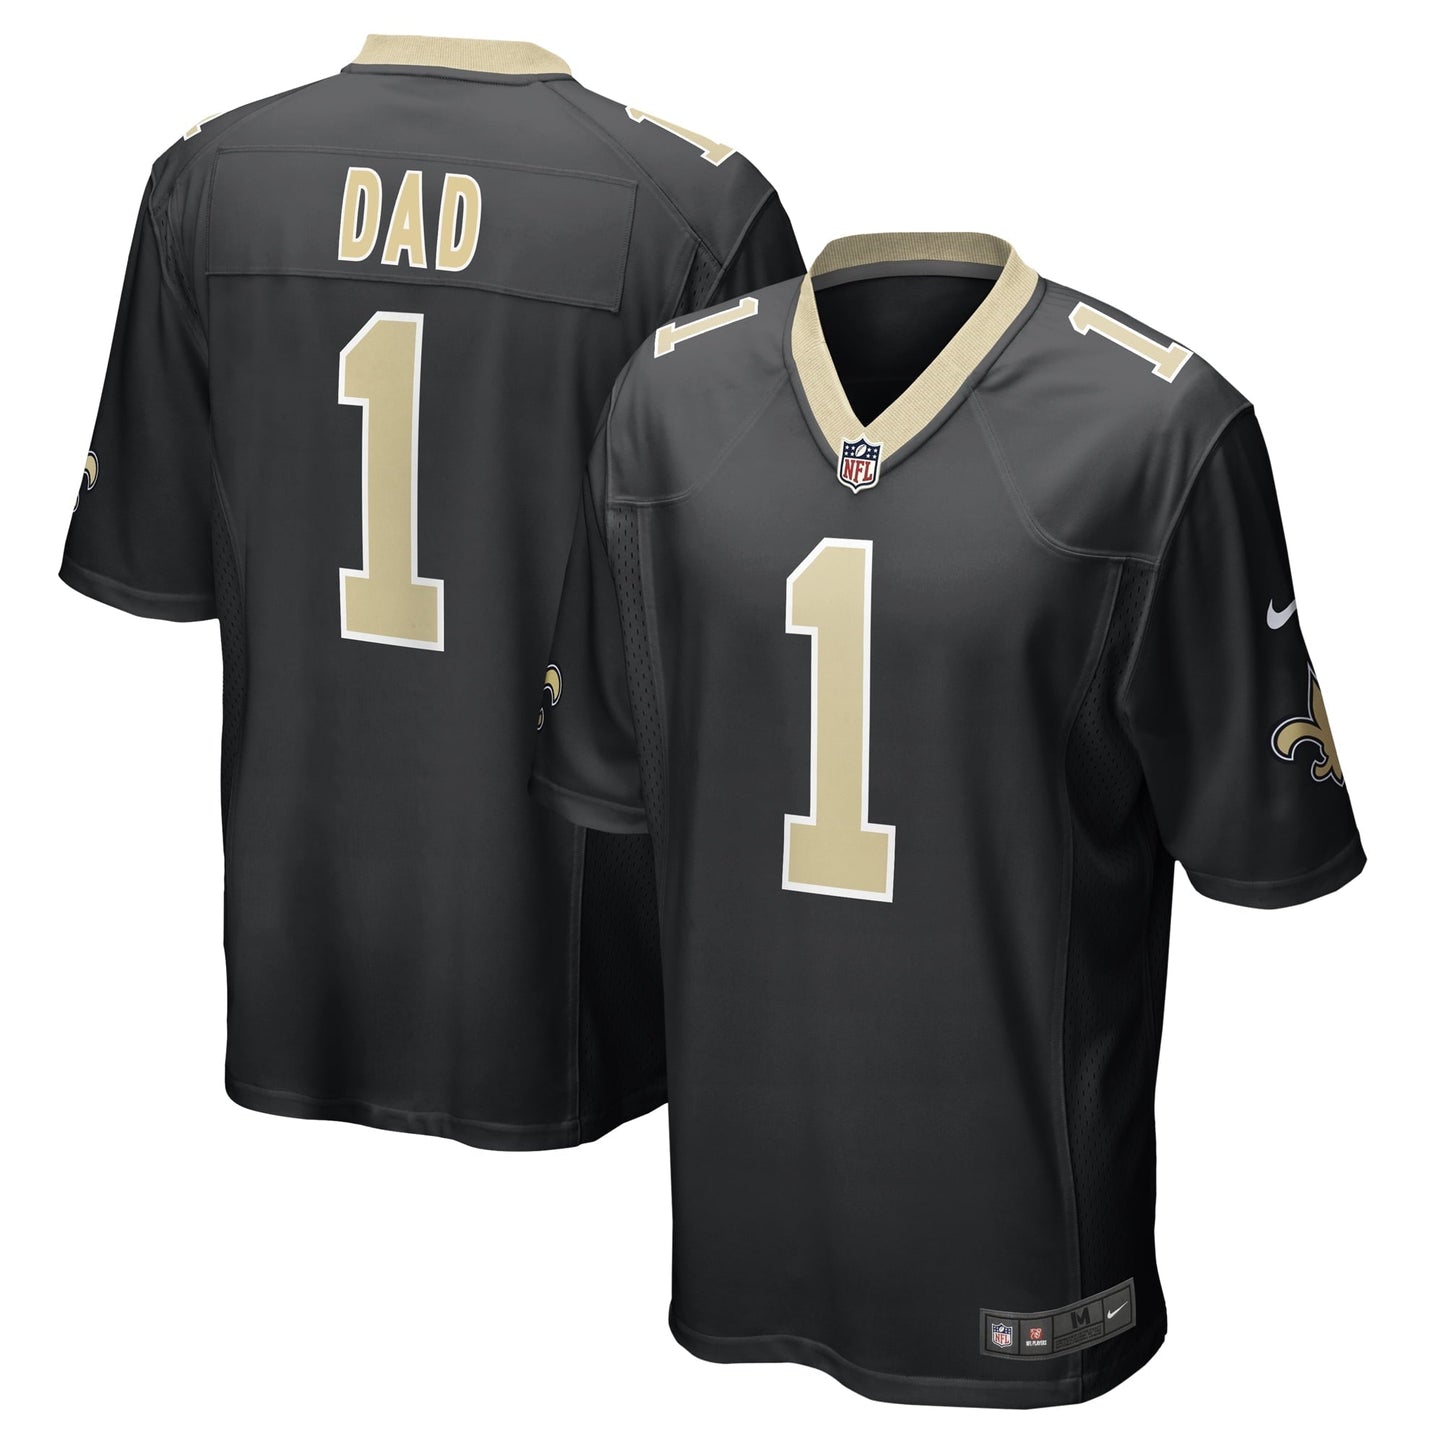 Men's Nike Number 1 Dad Black New Orleans Saints Game Jersey